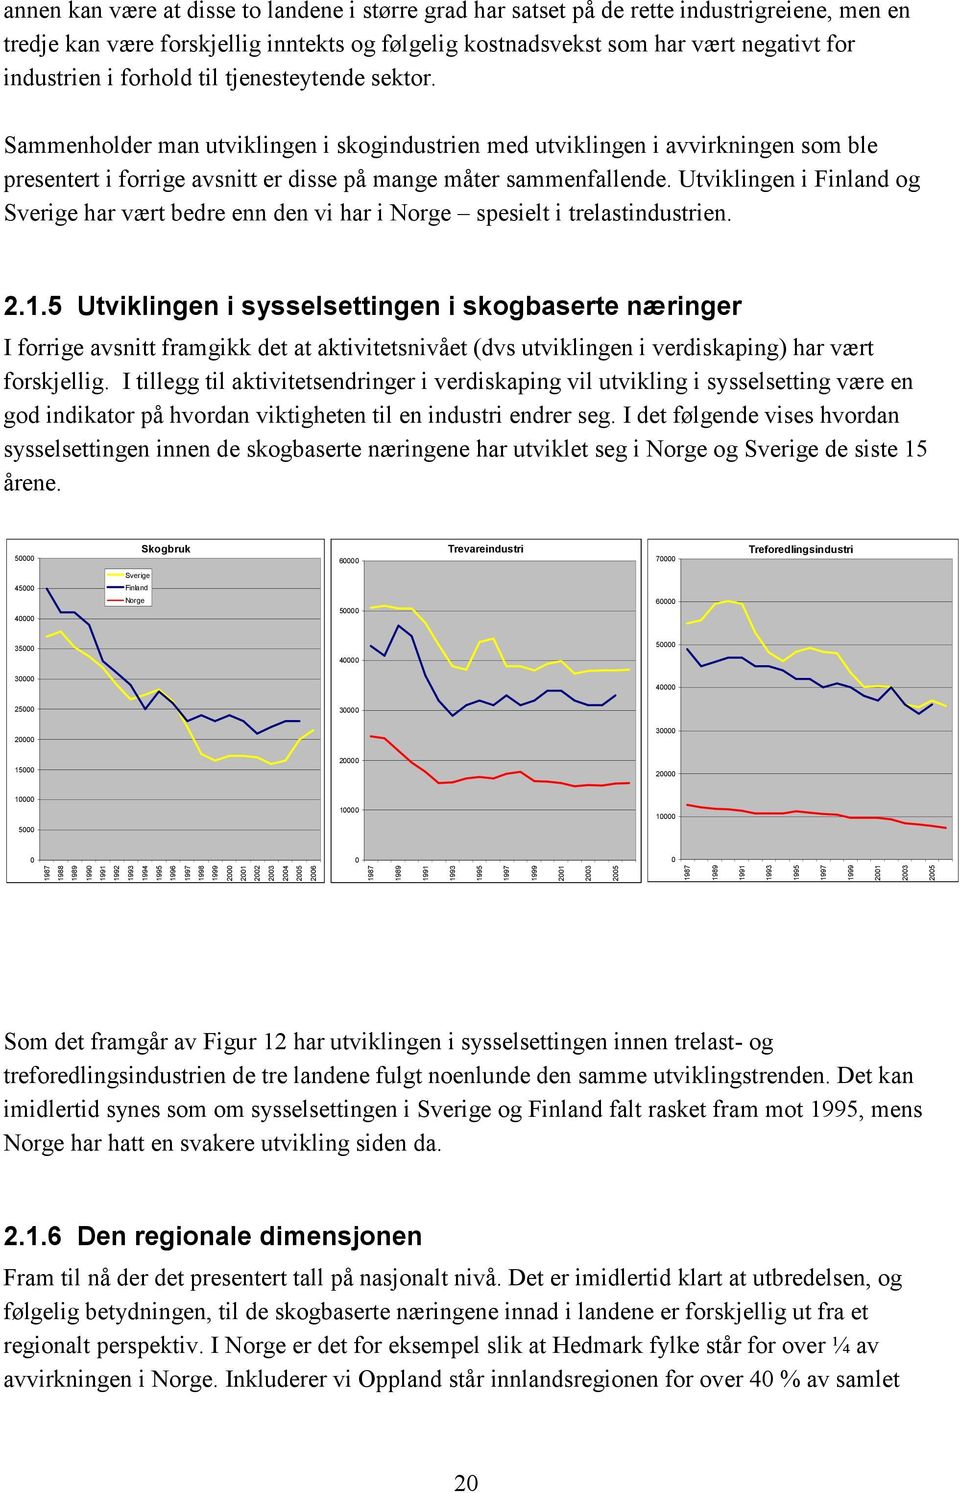 Utviklingen i og Sverige har vært bedre enn den vi har i Norge spesielt i trelastindustrien. 2.1.